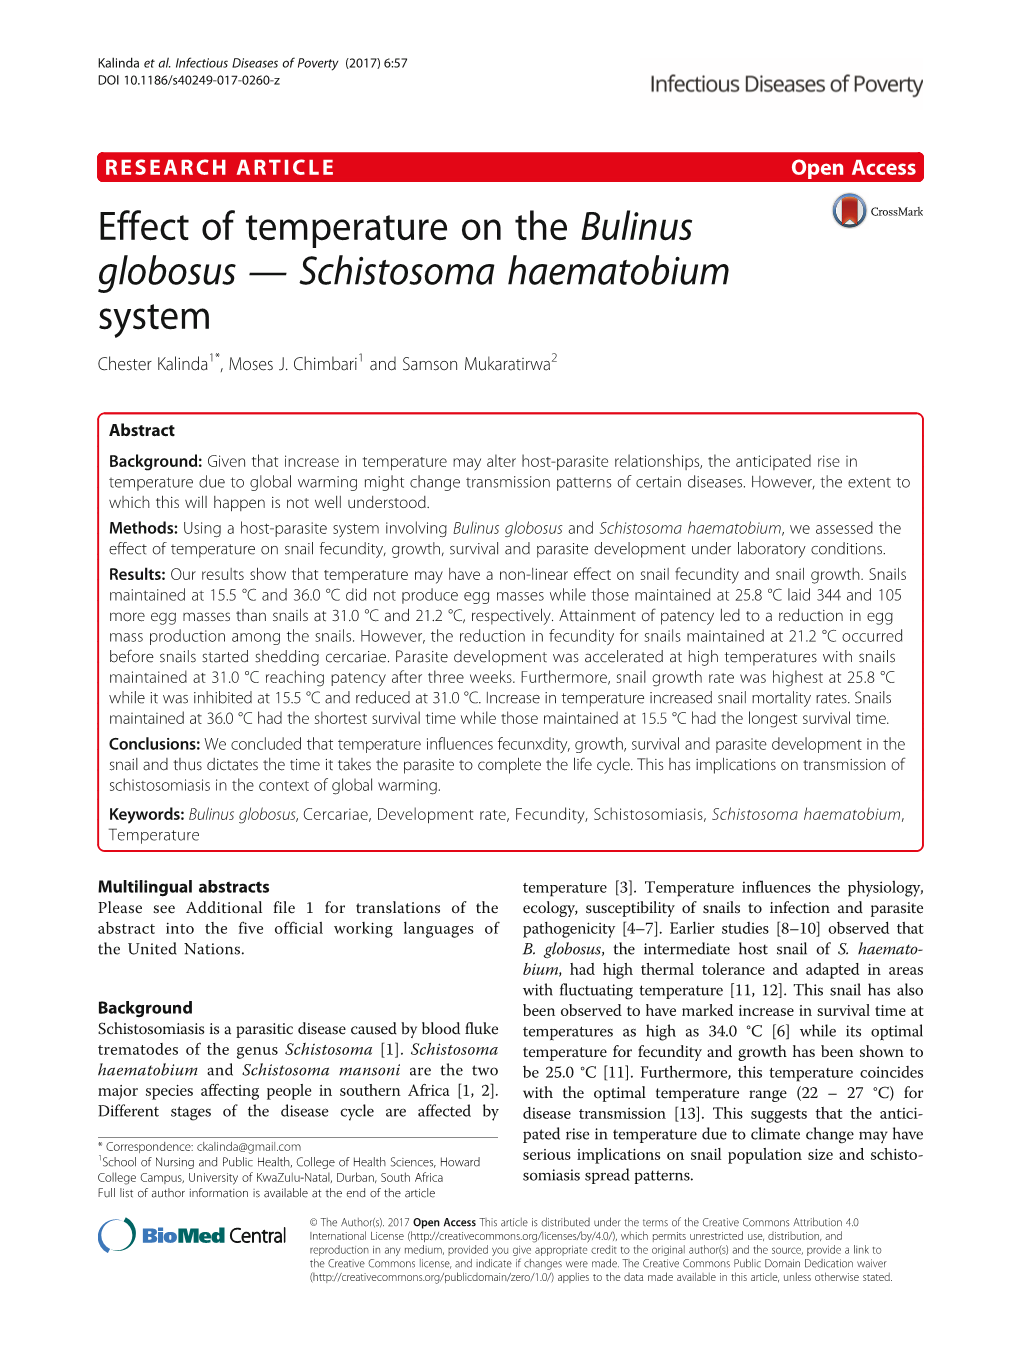 Effect of Temperature on the Bulinus Globosus — Schistosoma Haematobium System Chester Kalinda1*, Moses J